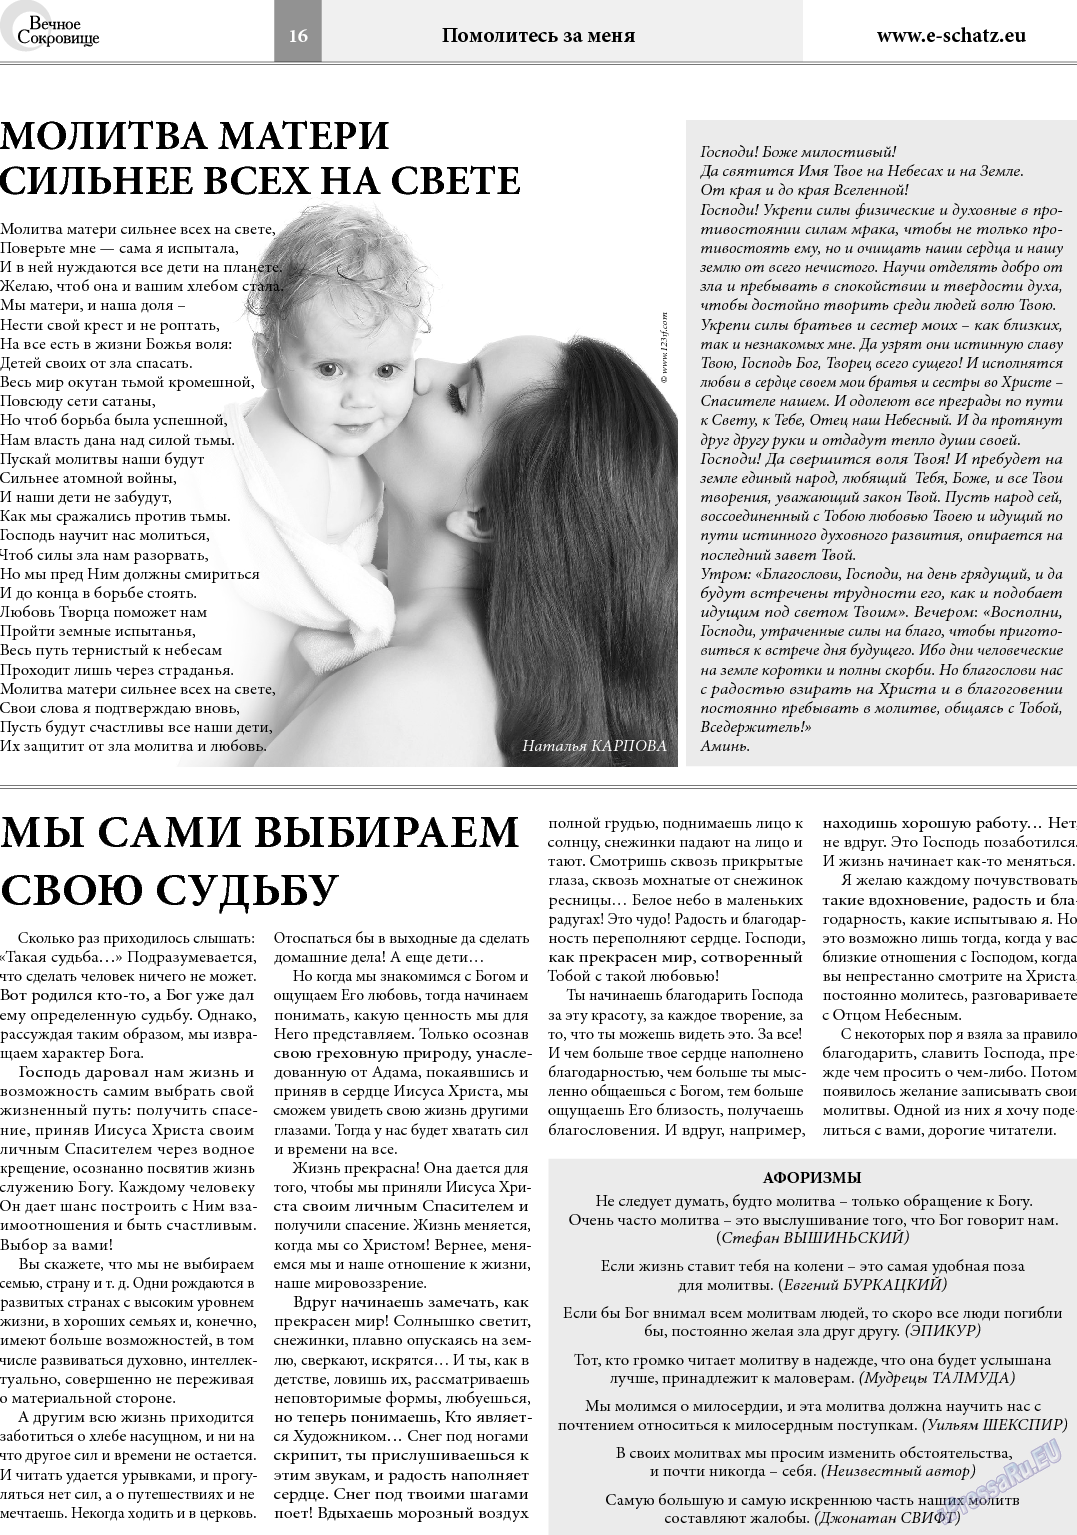 Вечное сокровище, газета. 2014 №1 стр.16